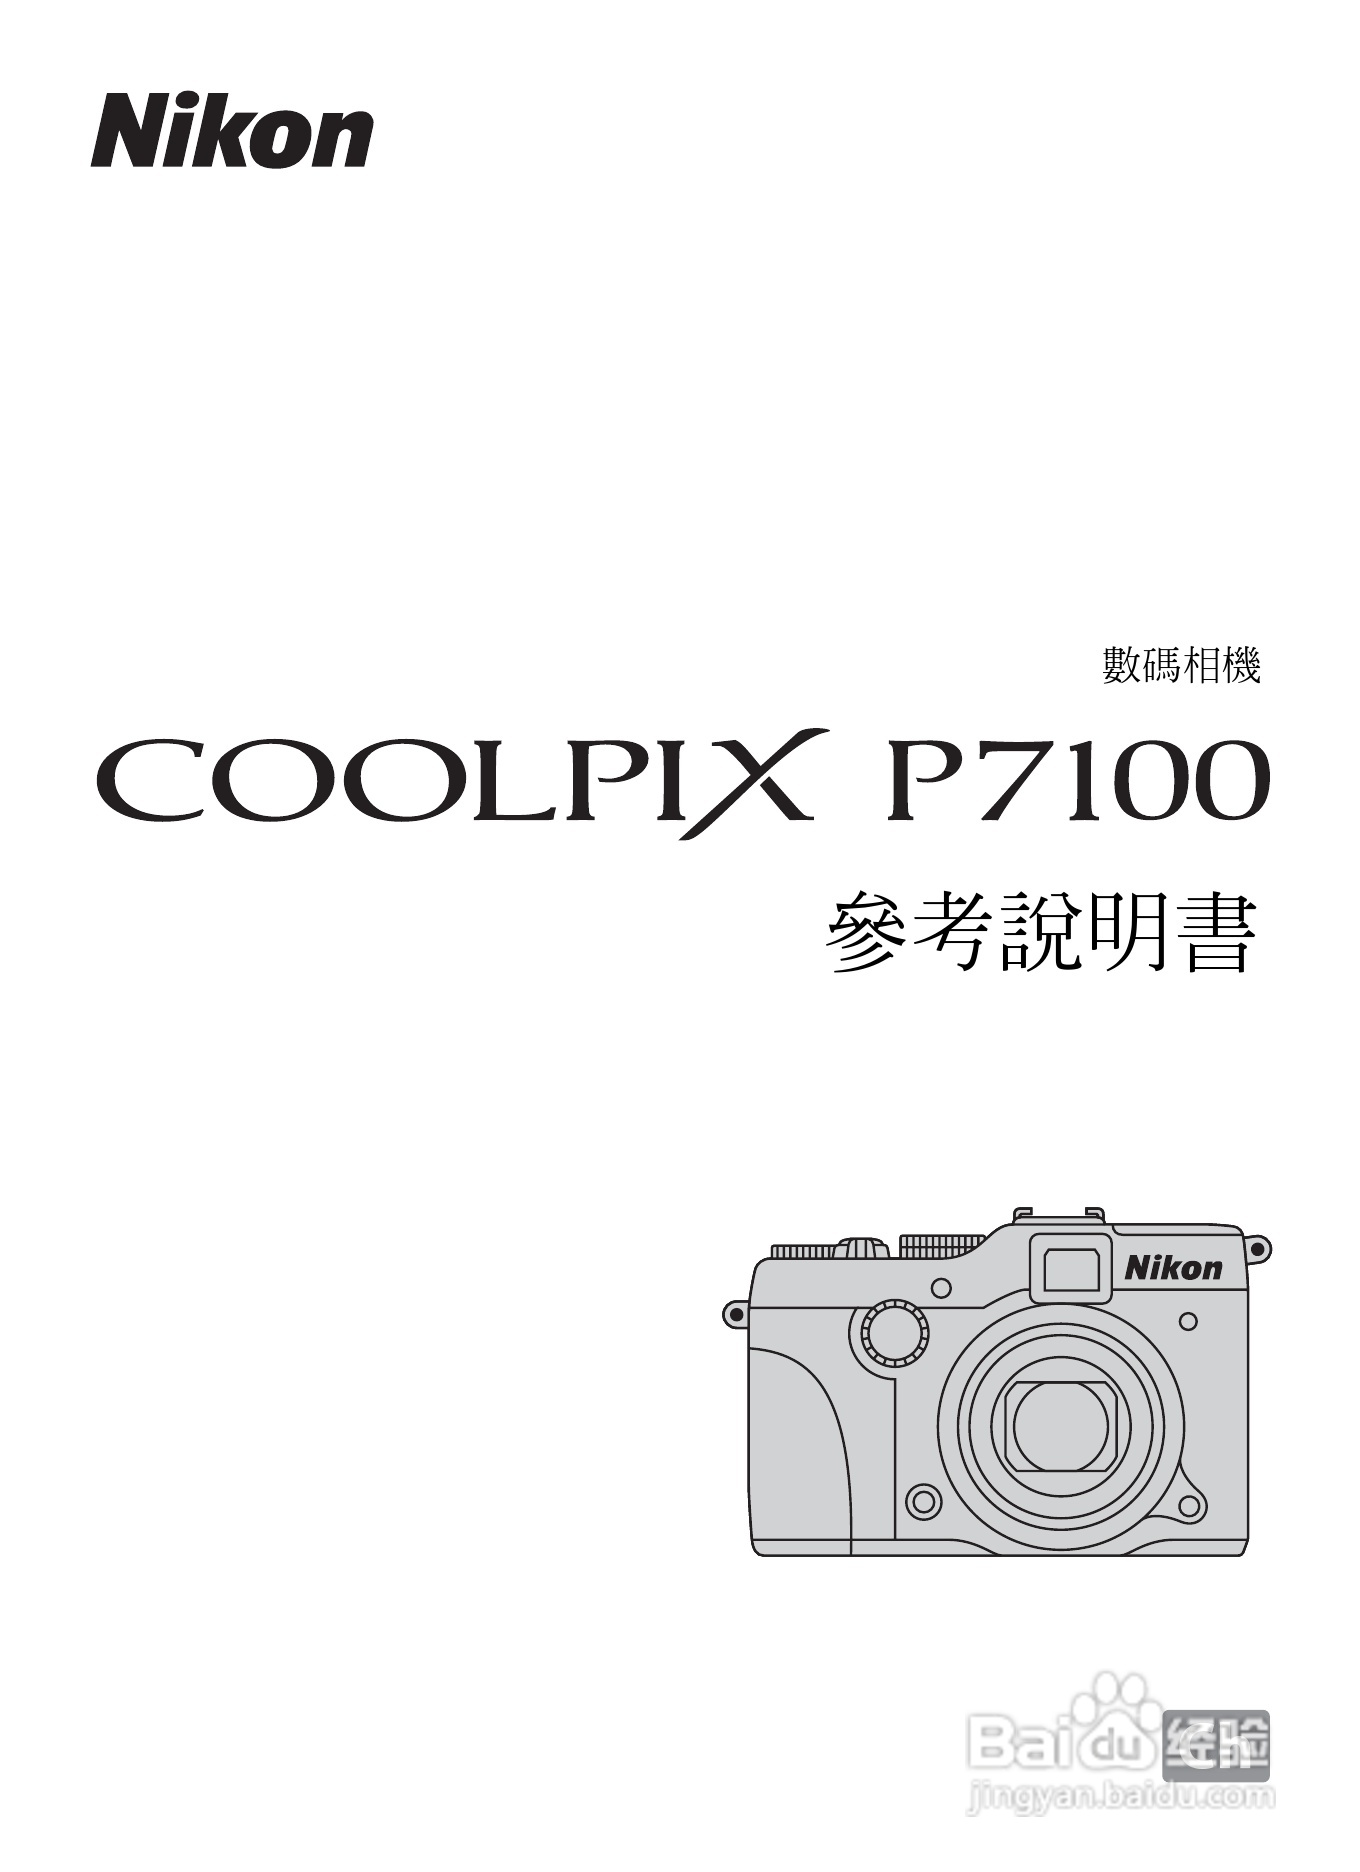 Nikon D7100 Review